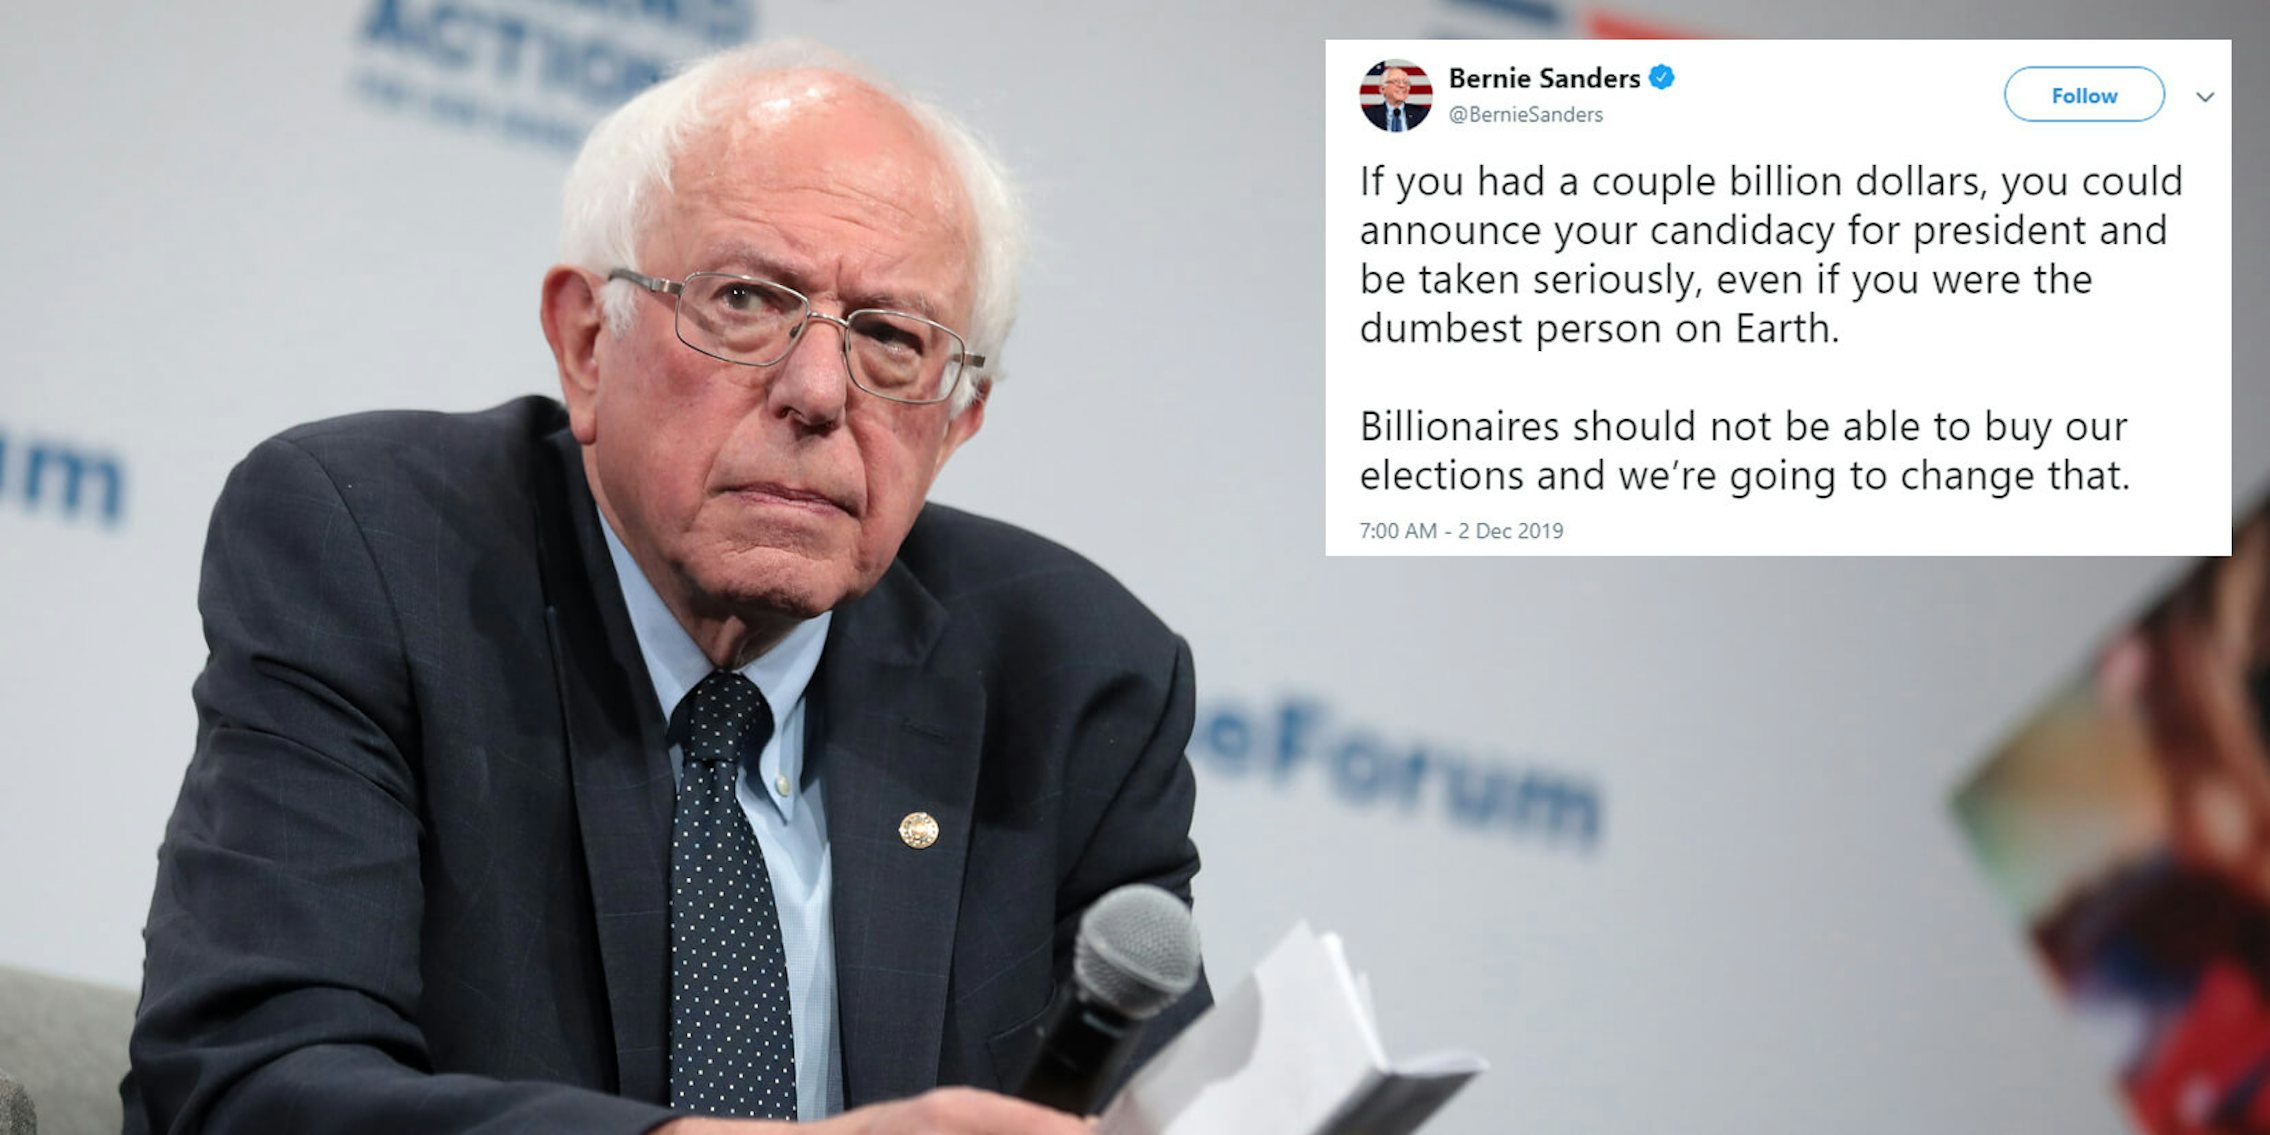 Bernie Sanders Billionaires Tweet